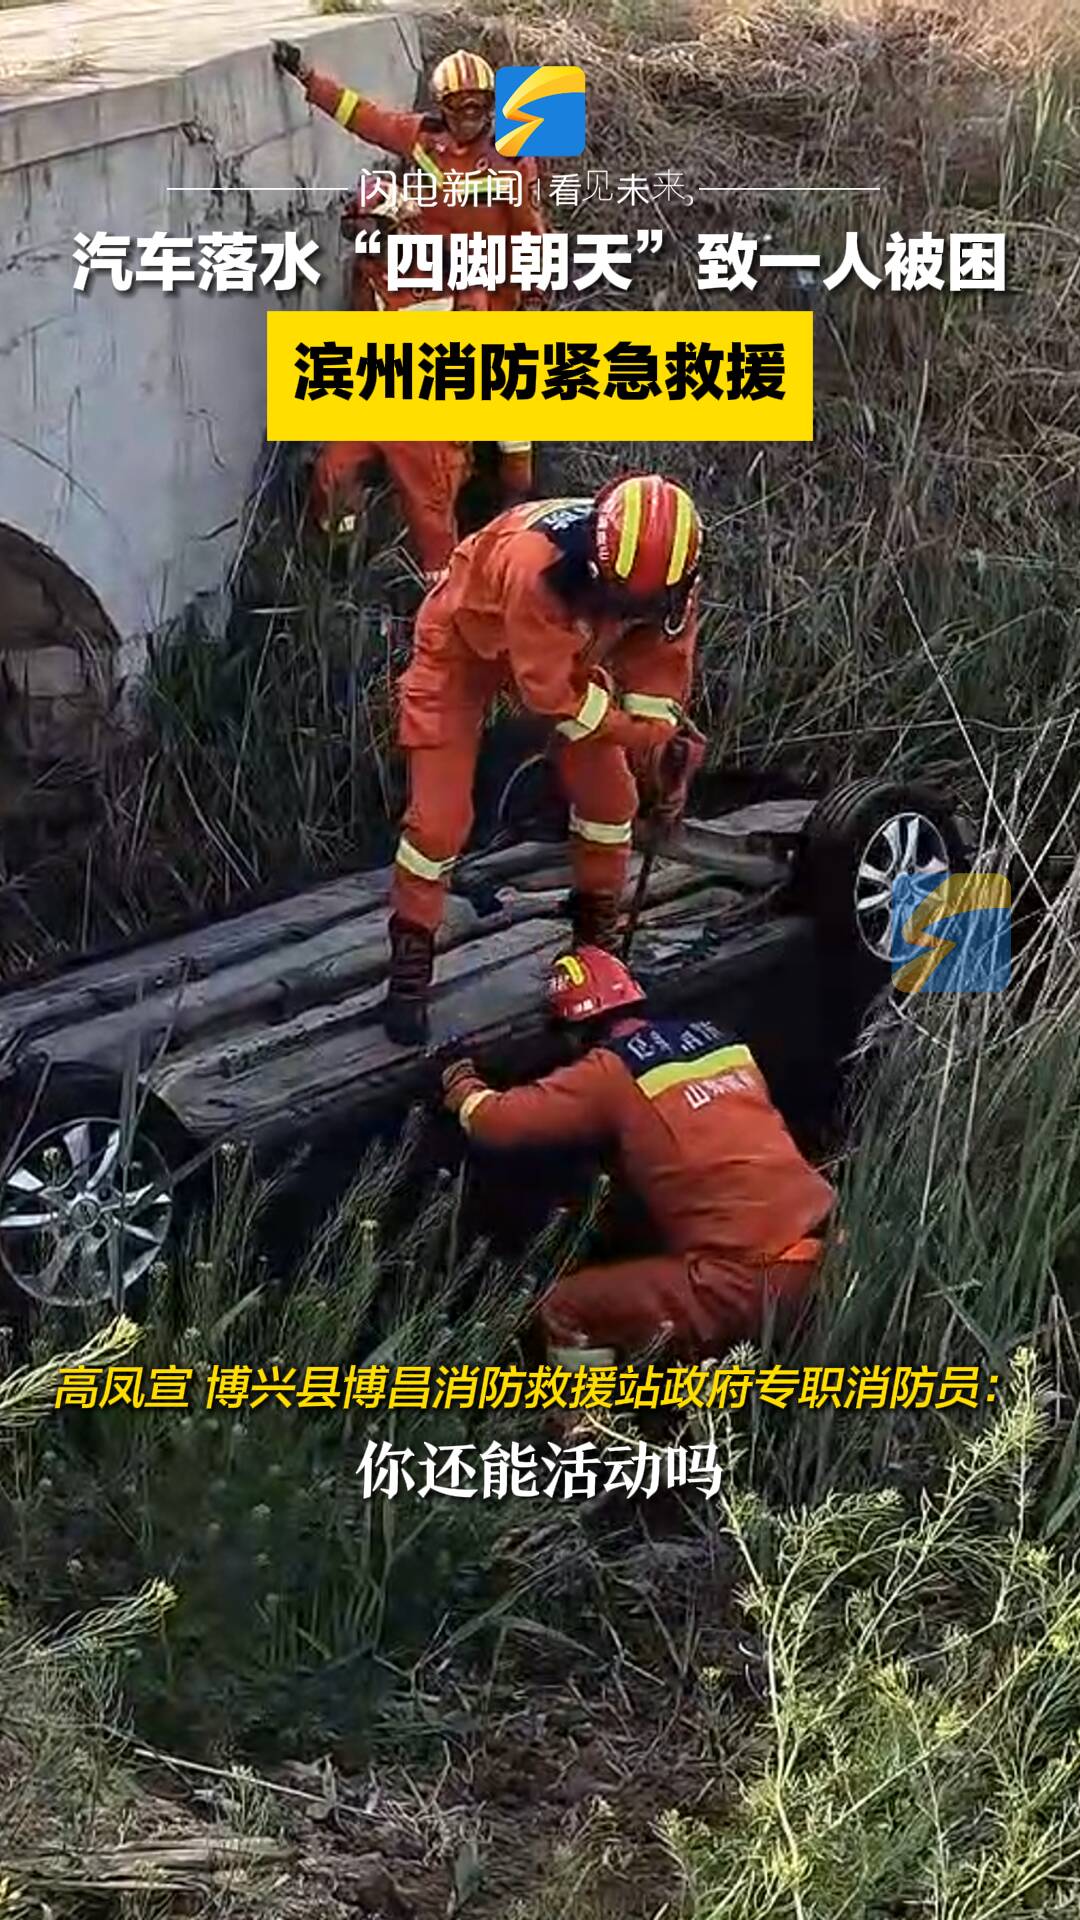 汽车落水“四脚朝天”致一人被困 滨州消防紧急救援